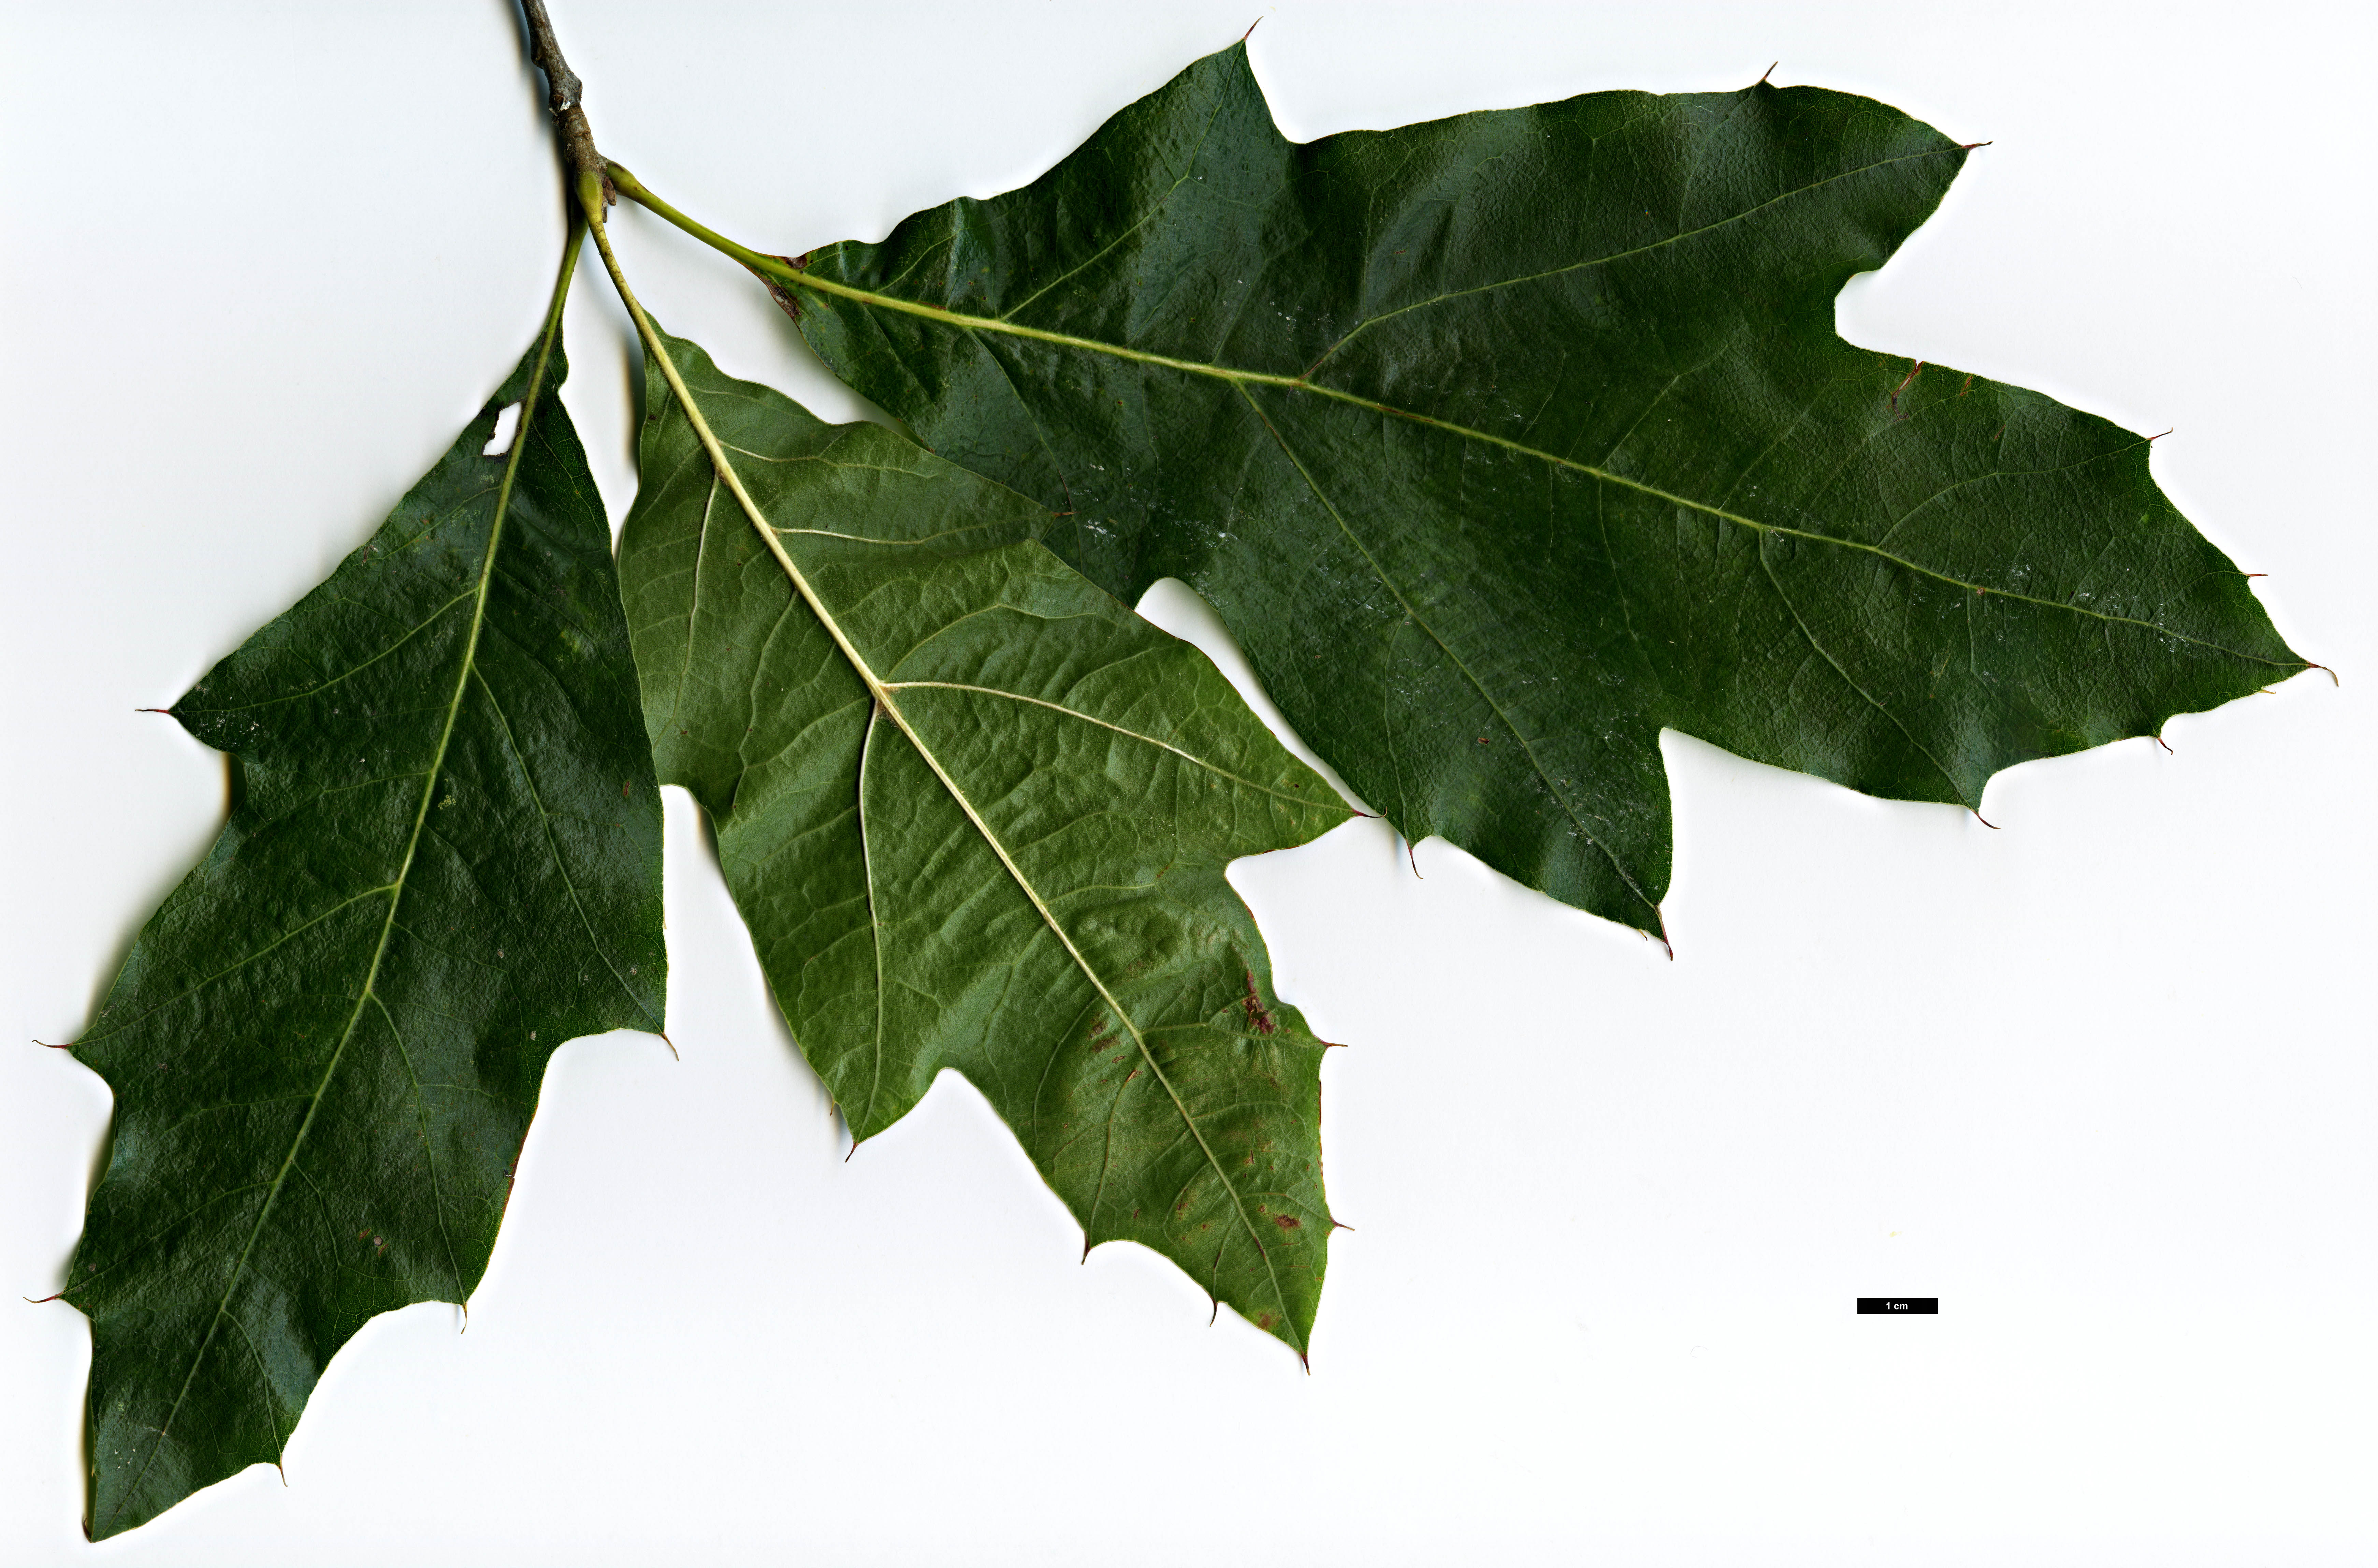 High resolution image: Family: Fagaceae - Genus: Quercus - Taxon: velutina - SpeciesSub: 'Habiflax'